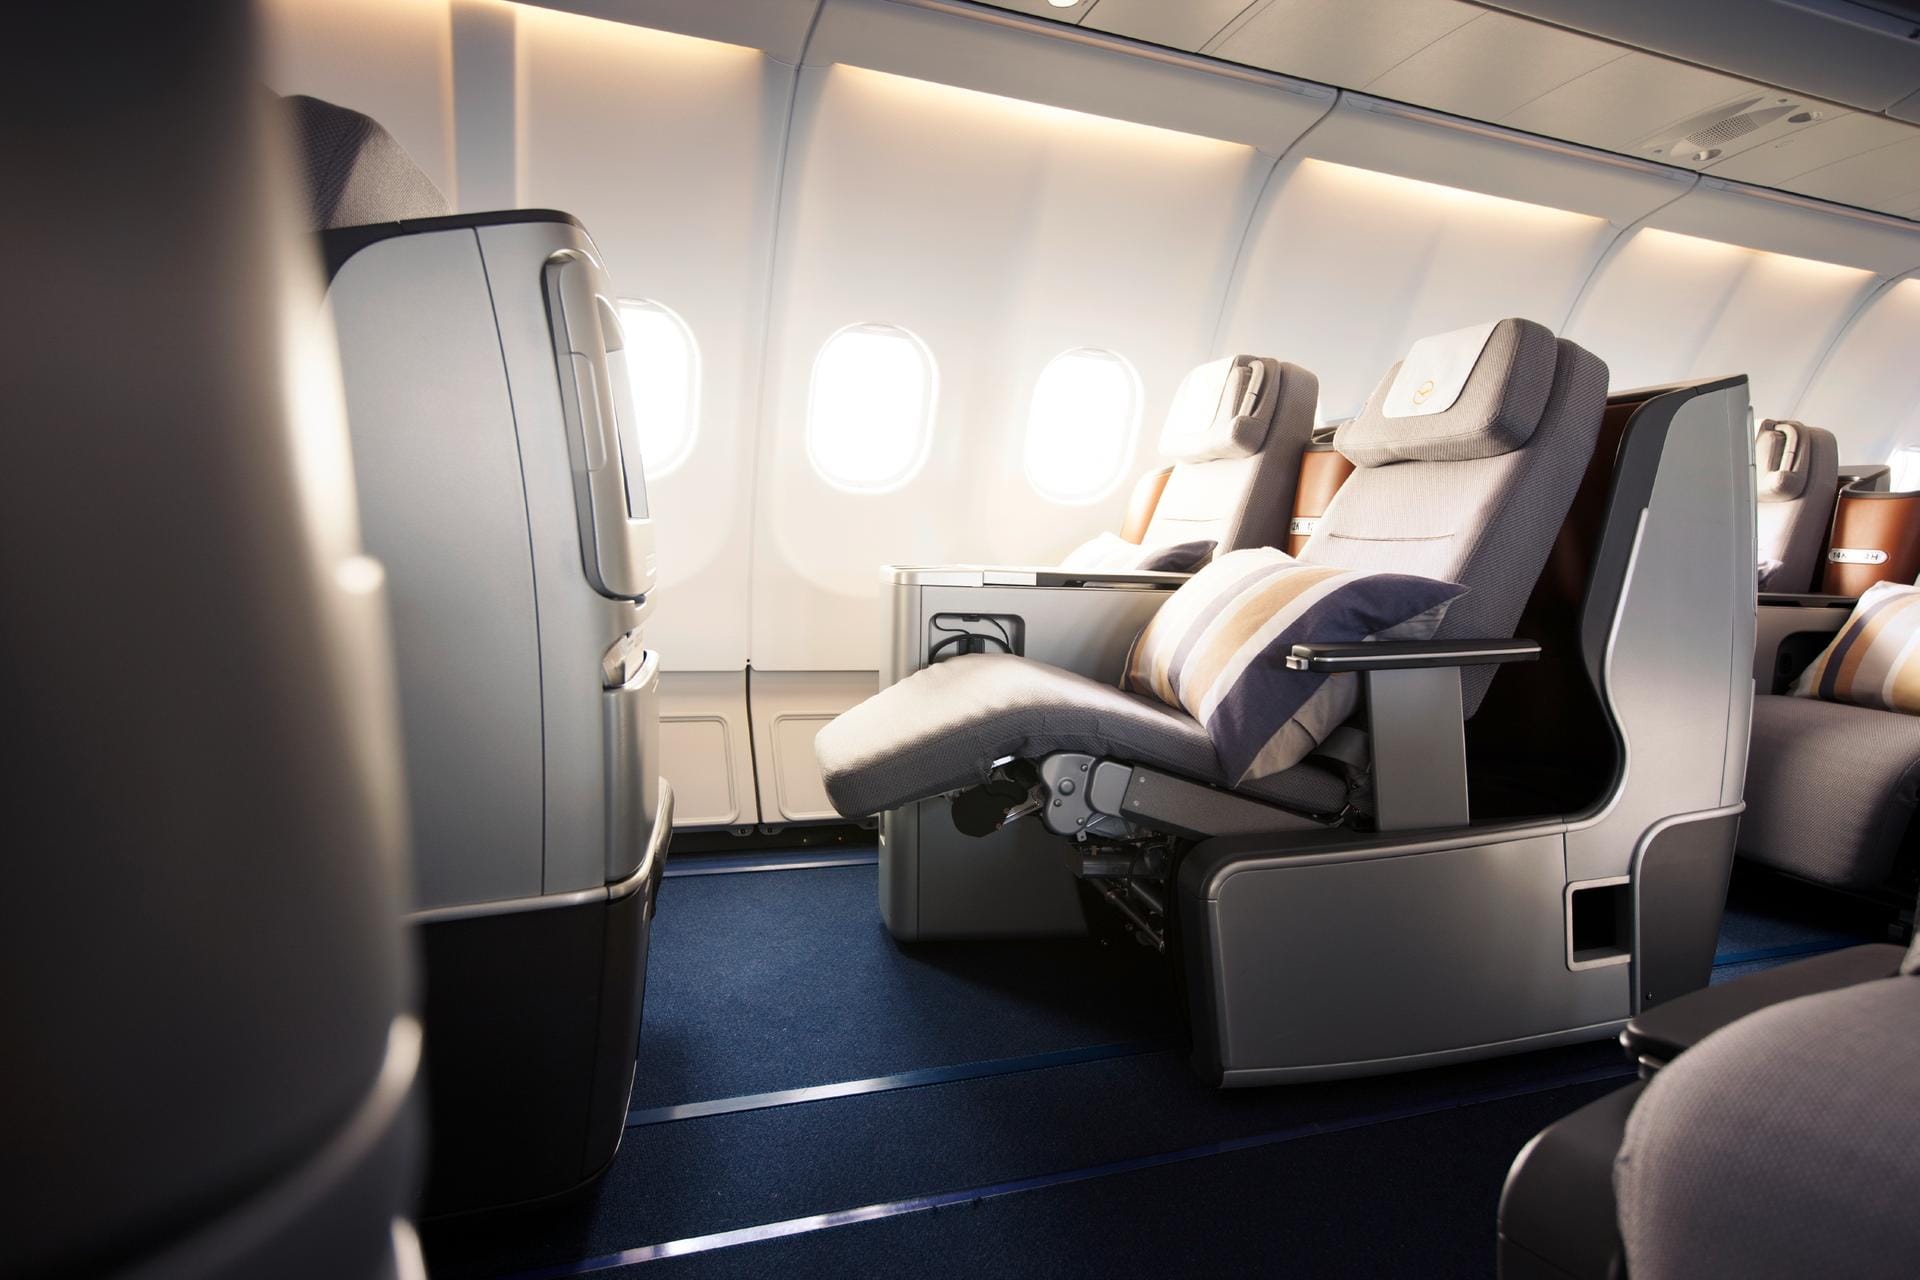 In der Business Class der Lufthansa können sich Fluggäste sogar ablegen. Das hat seinen Preis: Knapp unter 2000 Euro kosten die Tickets mindestens.